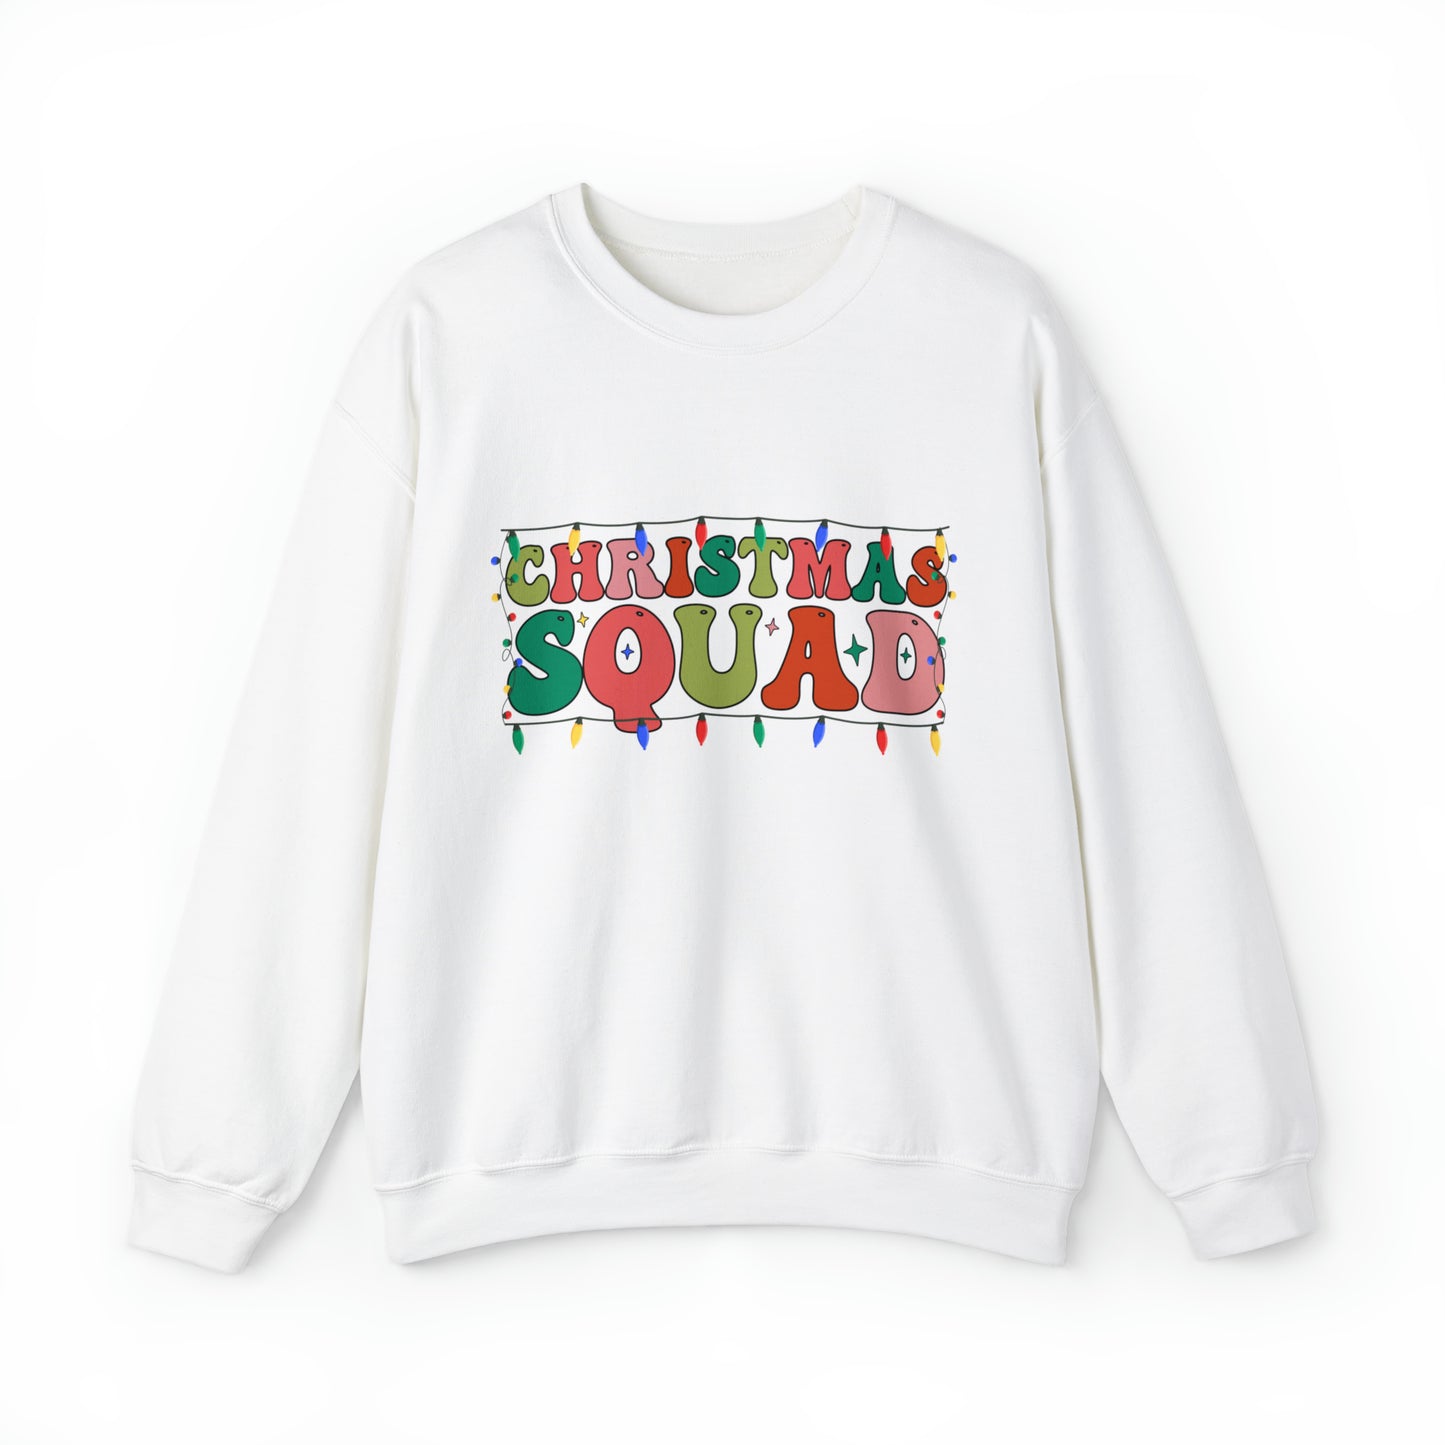 Christmas Squad Adult Family Group Santa Christmas Crewneck Sweatshirt